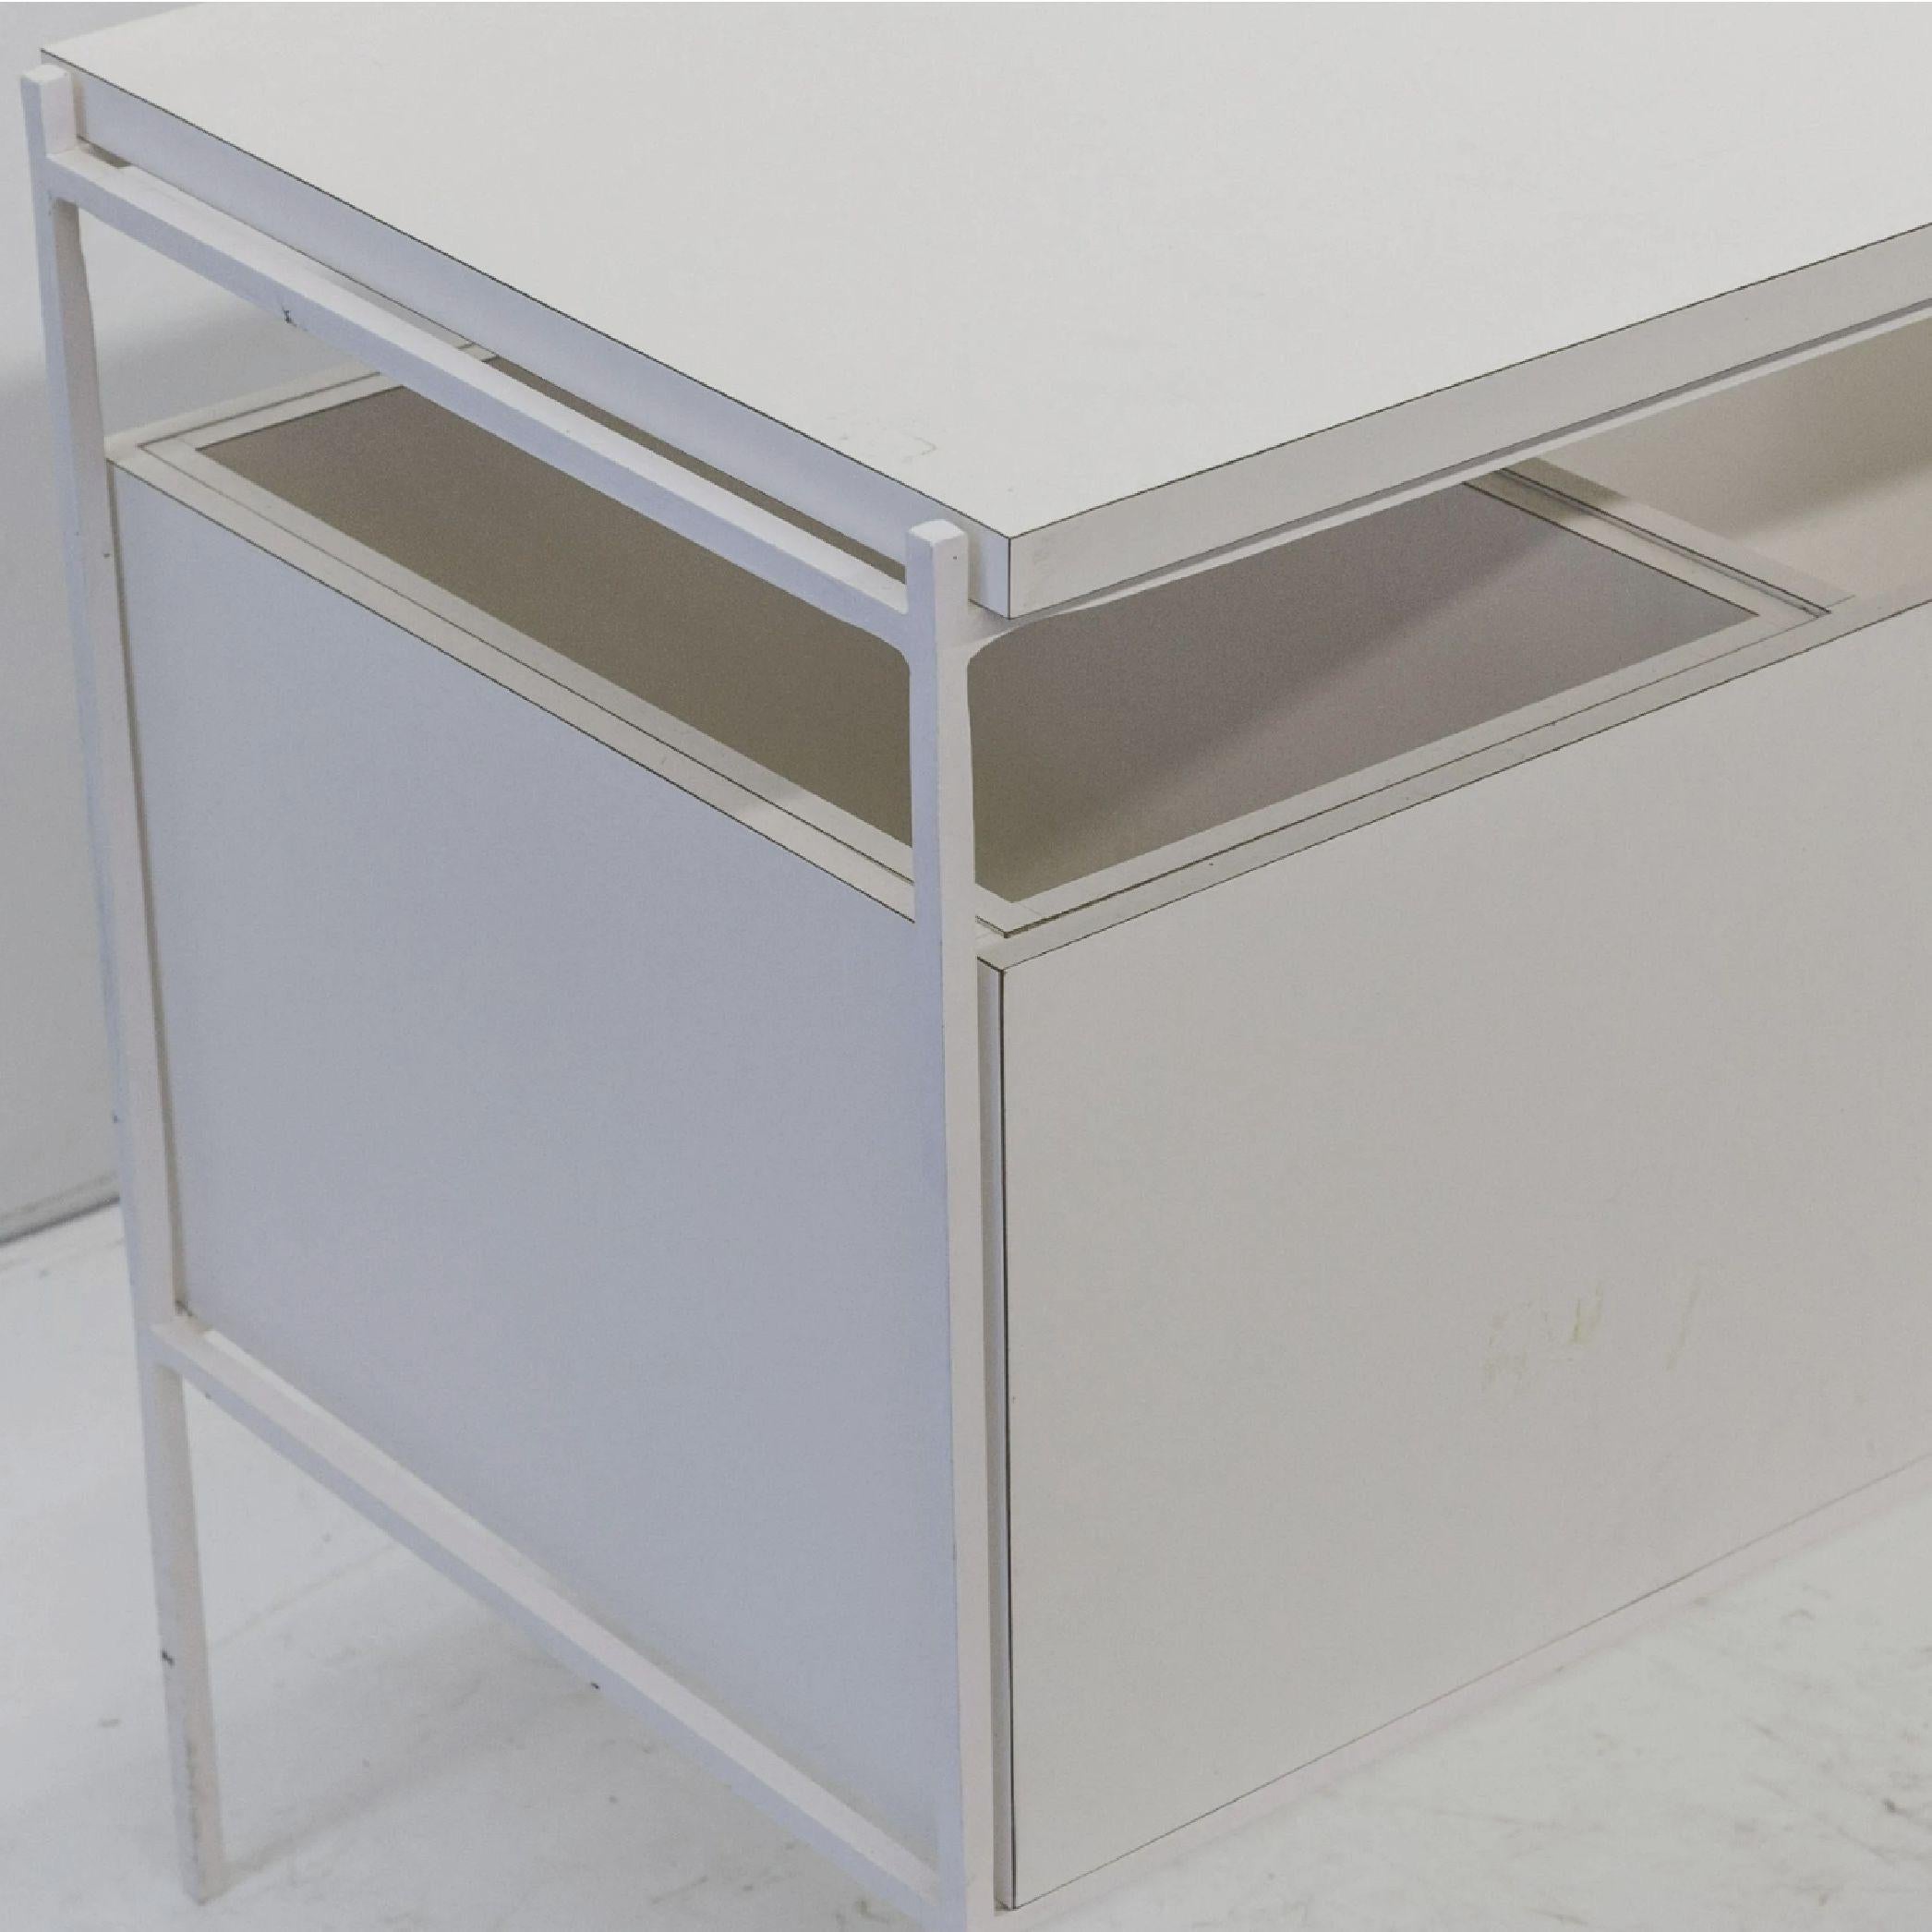 20th Century Ladislav Rado White Enameled Steel Modern Desk, Vanity, 1955, Knoll and Drake For Sale